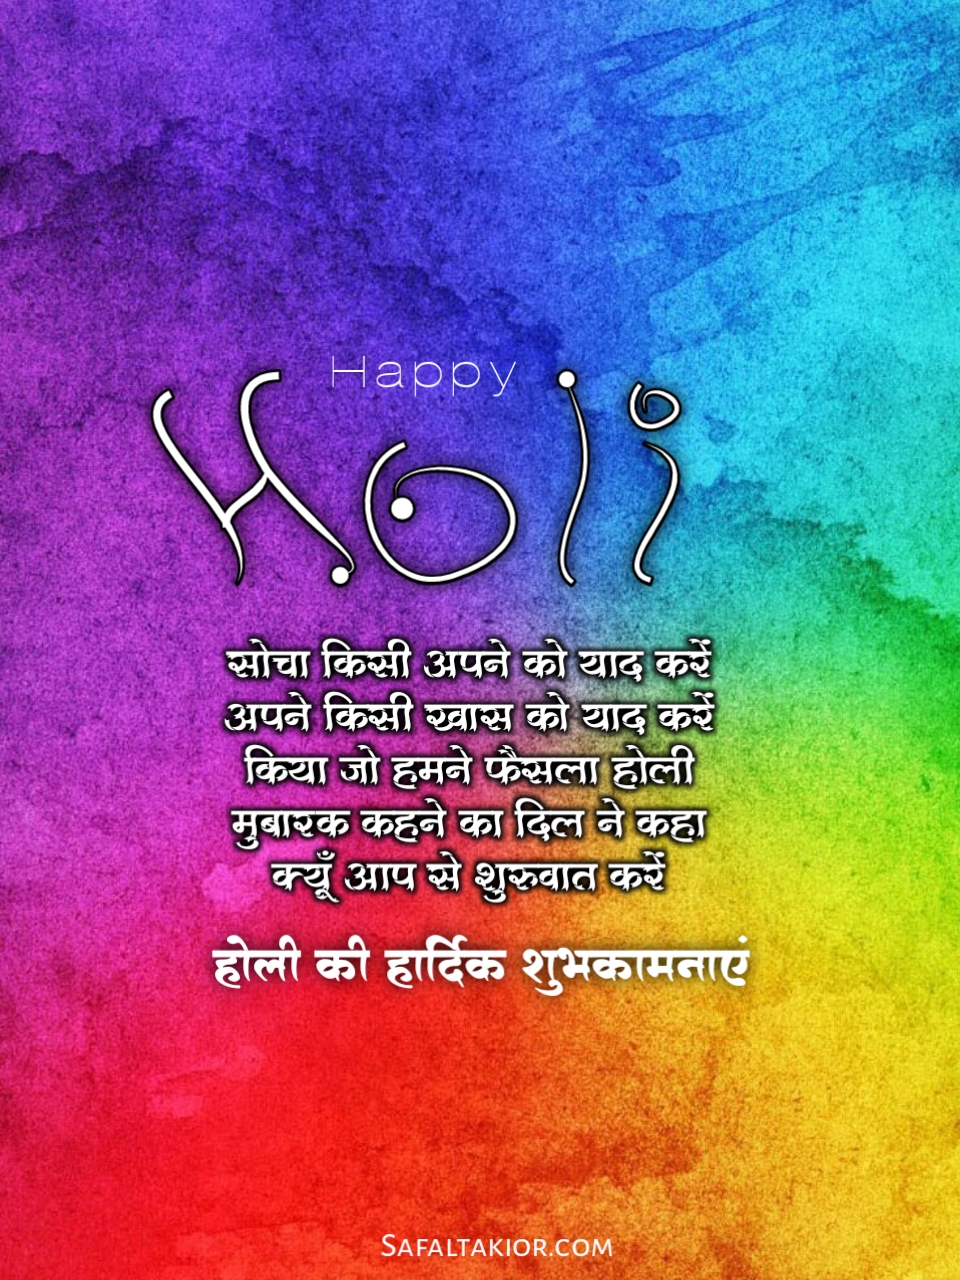 happy holi wishes hindi 